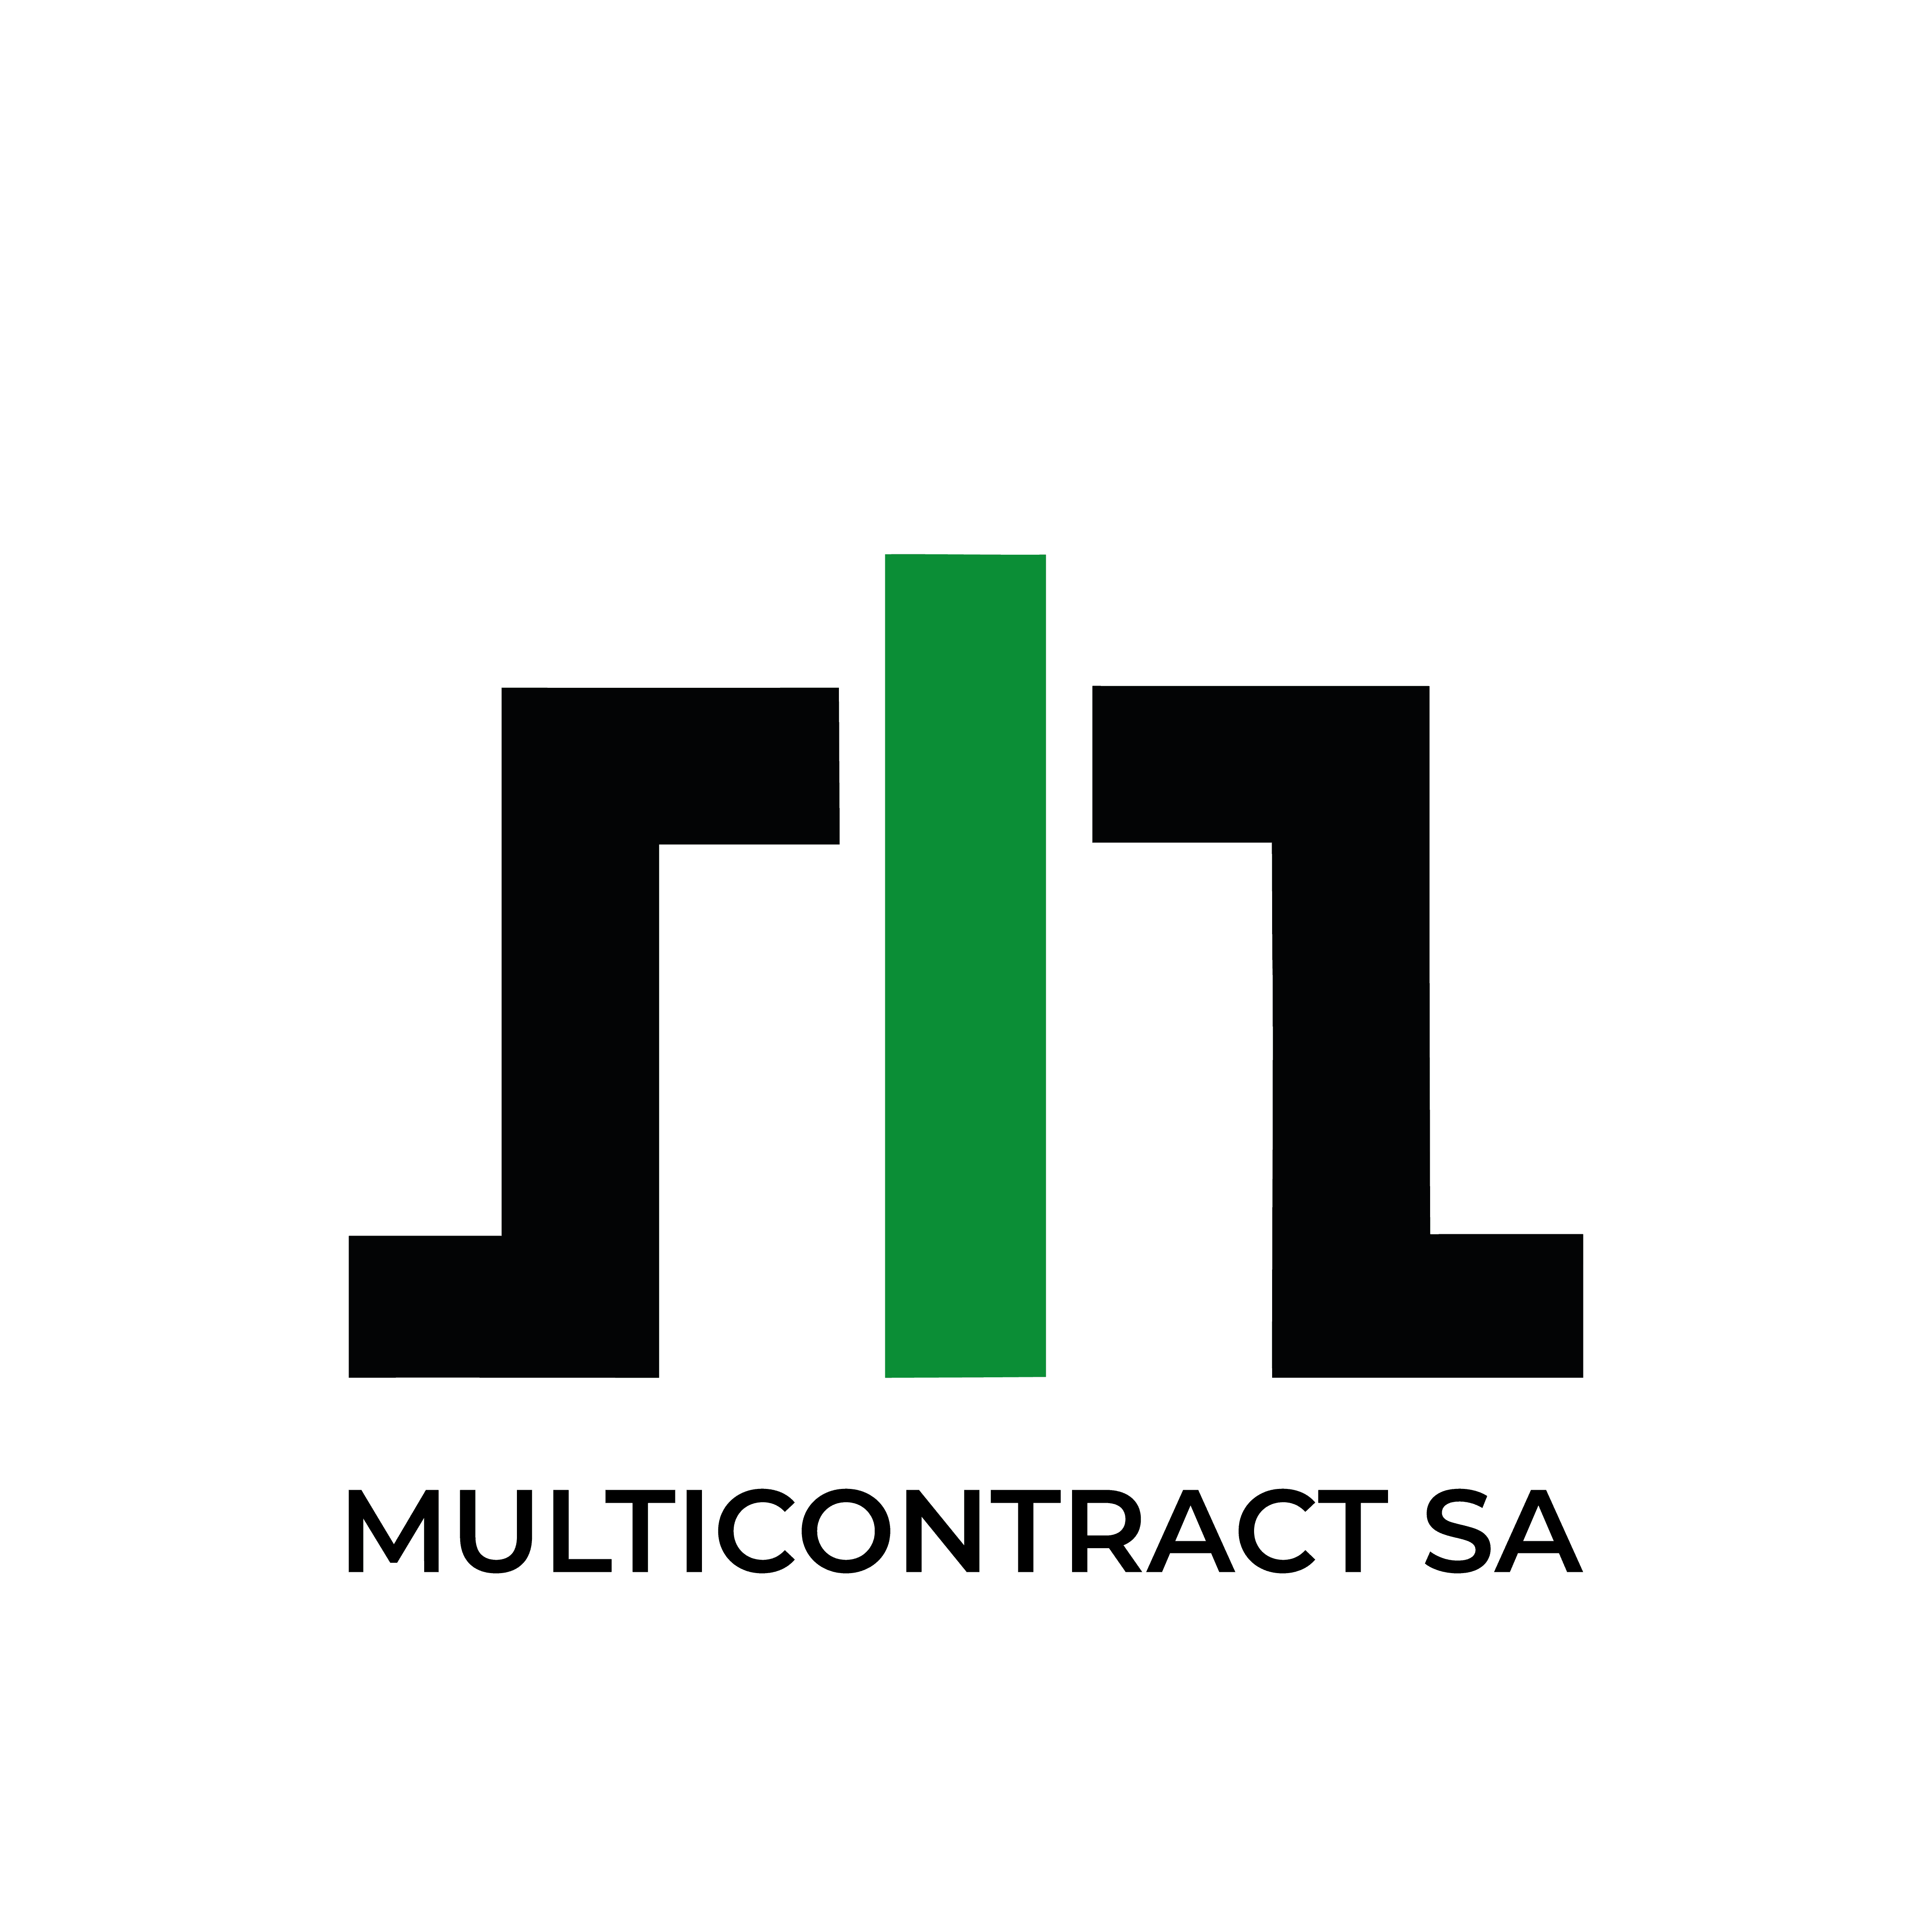 Multicontract SA